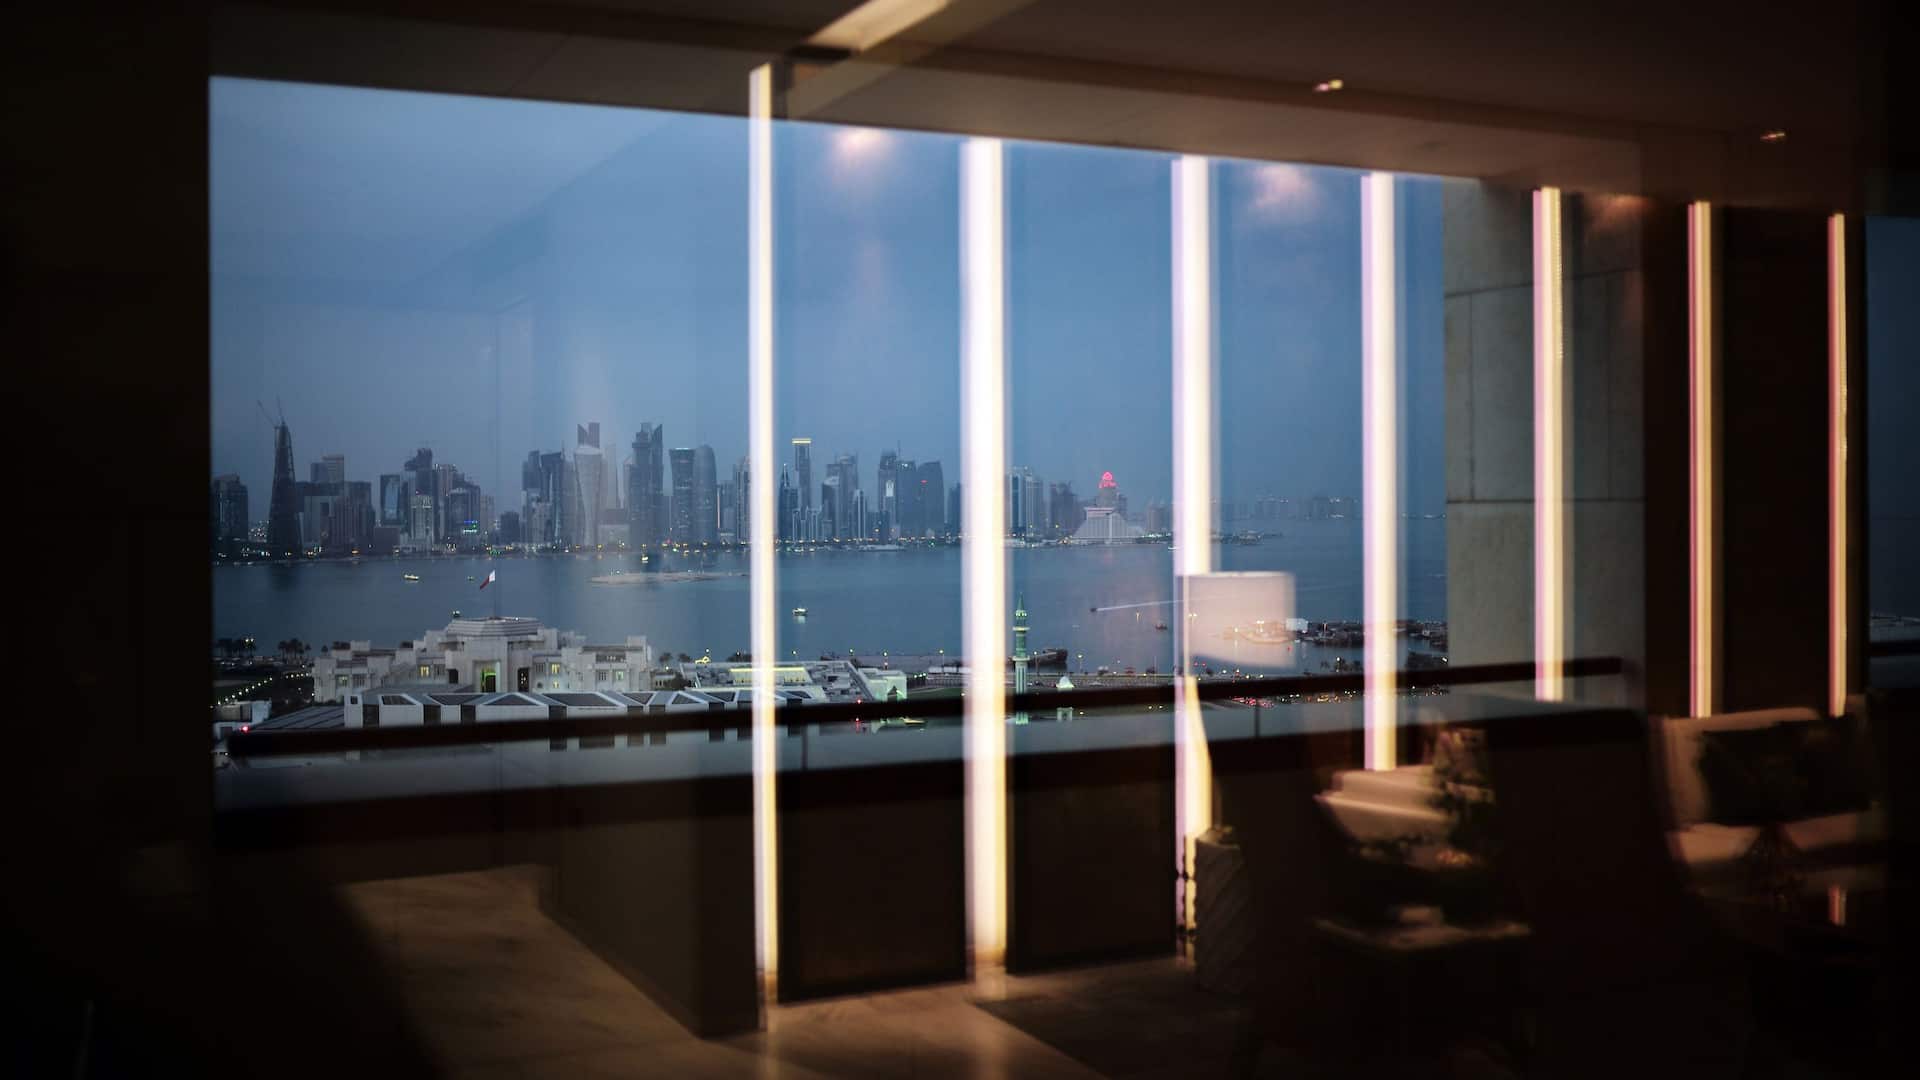 Panoramic view of the corniche from park Hyatt Doha